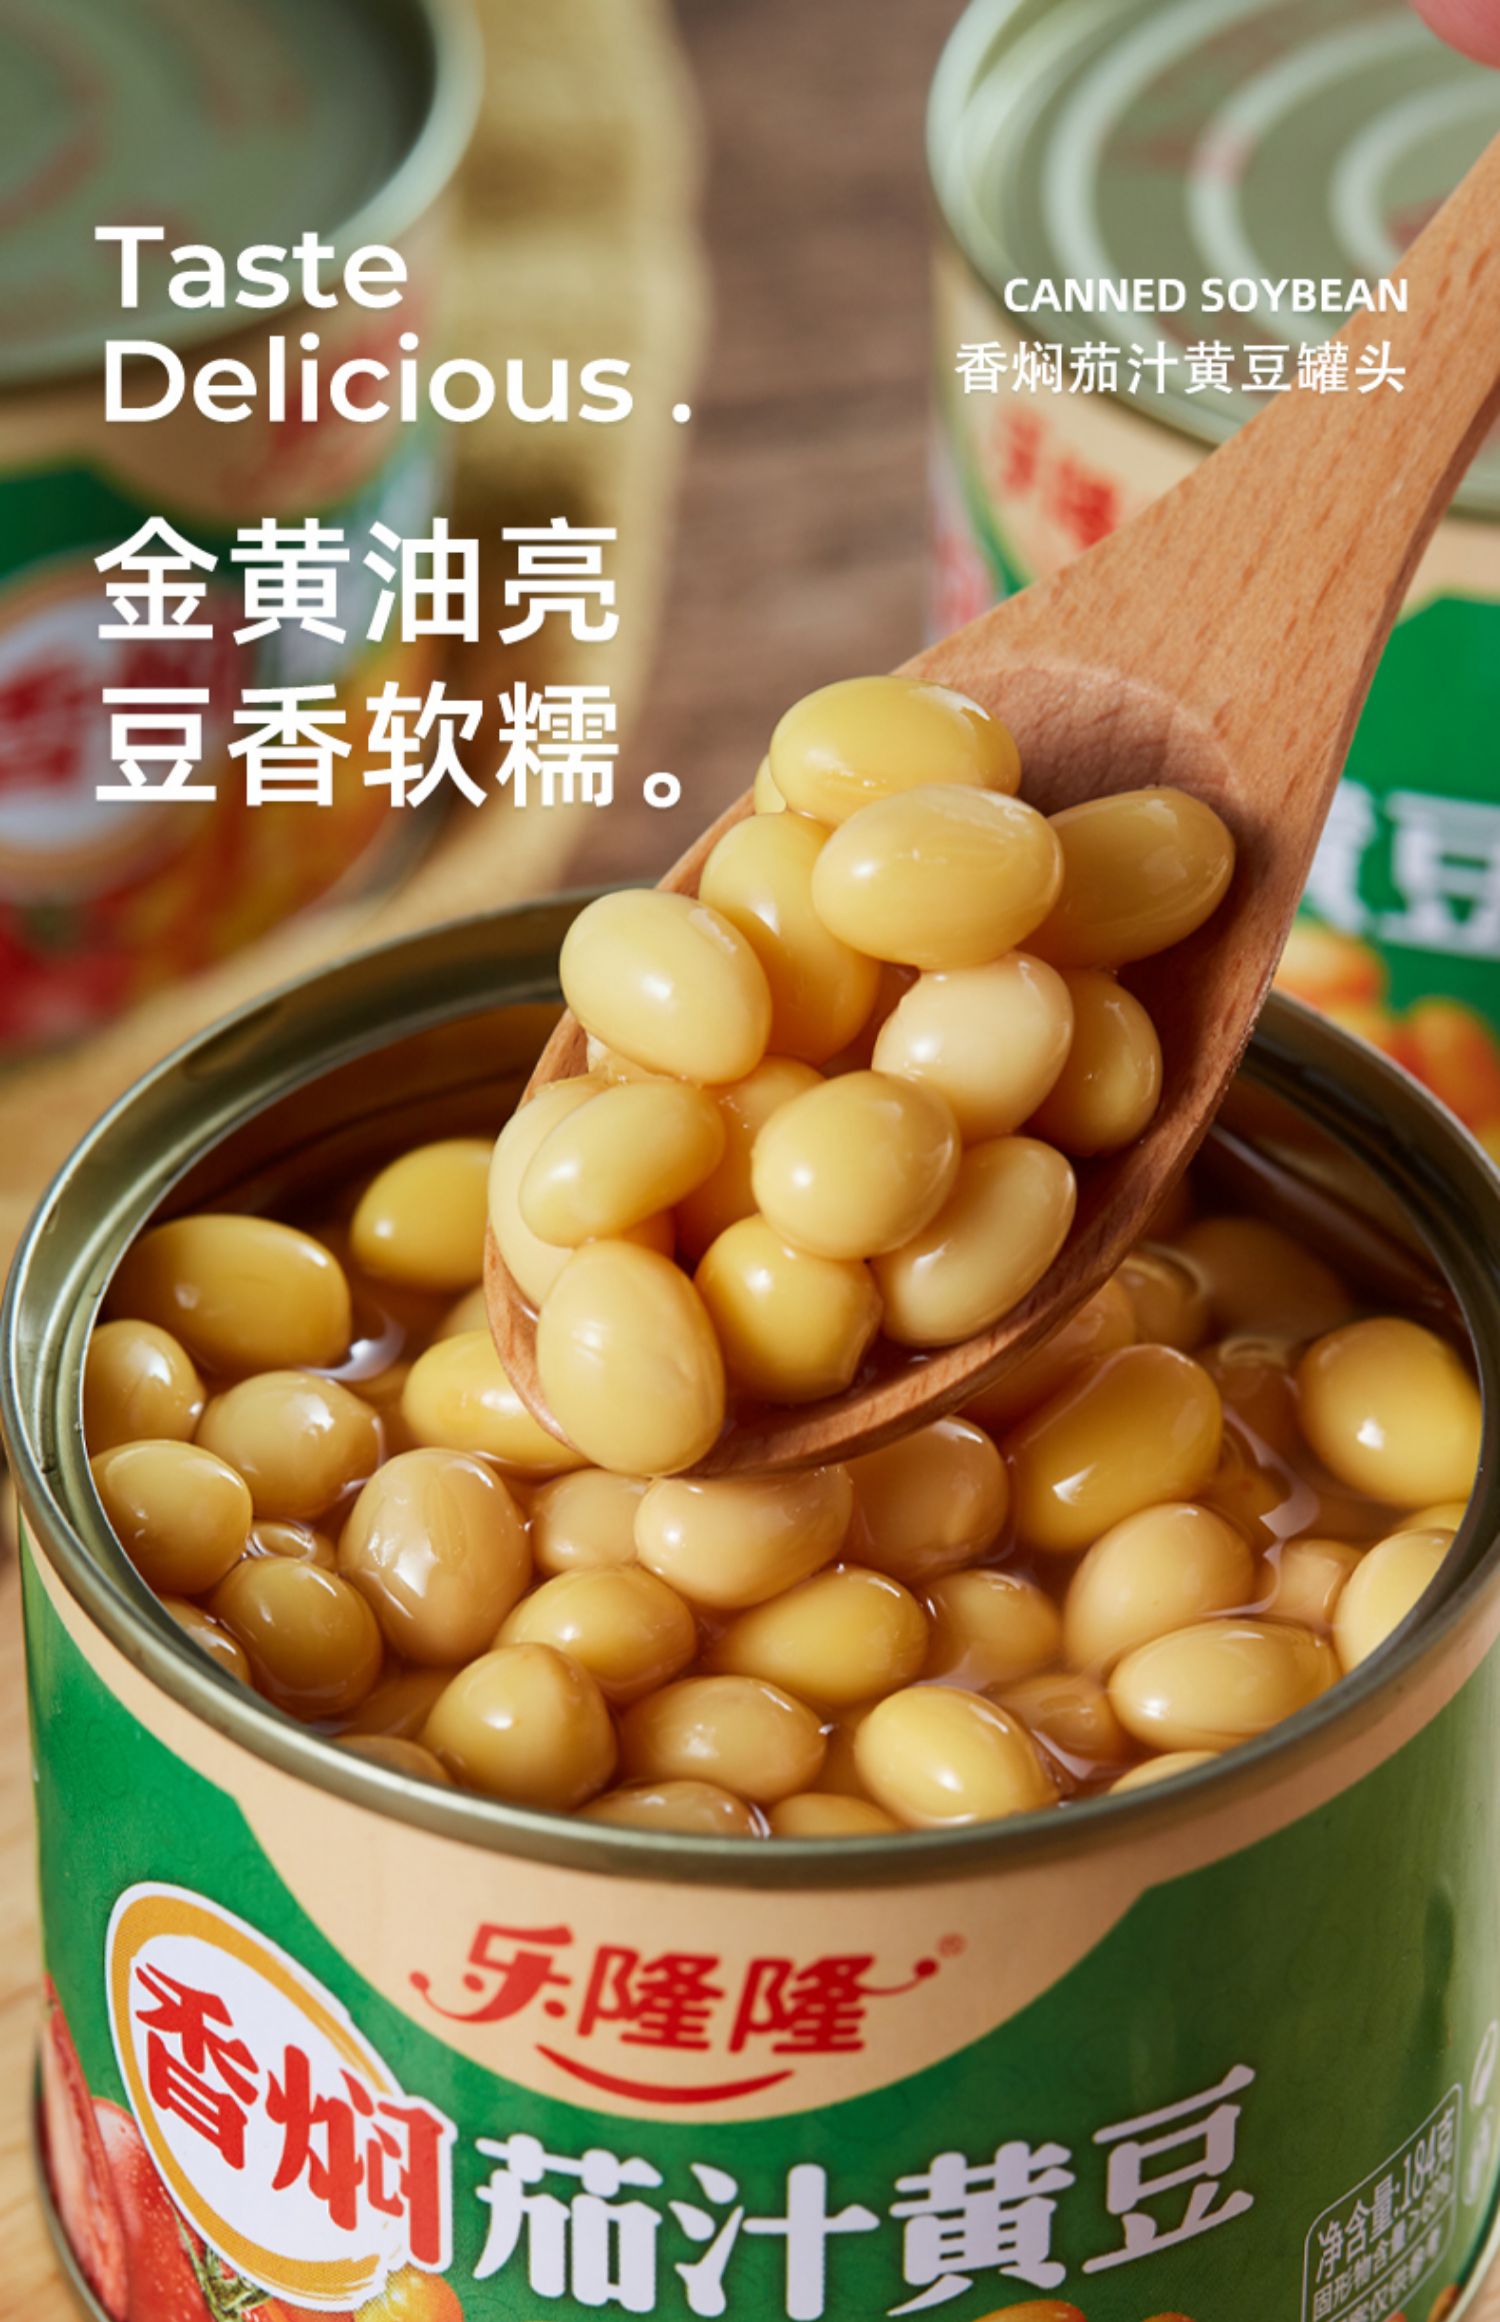 乐隆隆香焖茄汁黄豆罐头184g*6罐